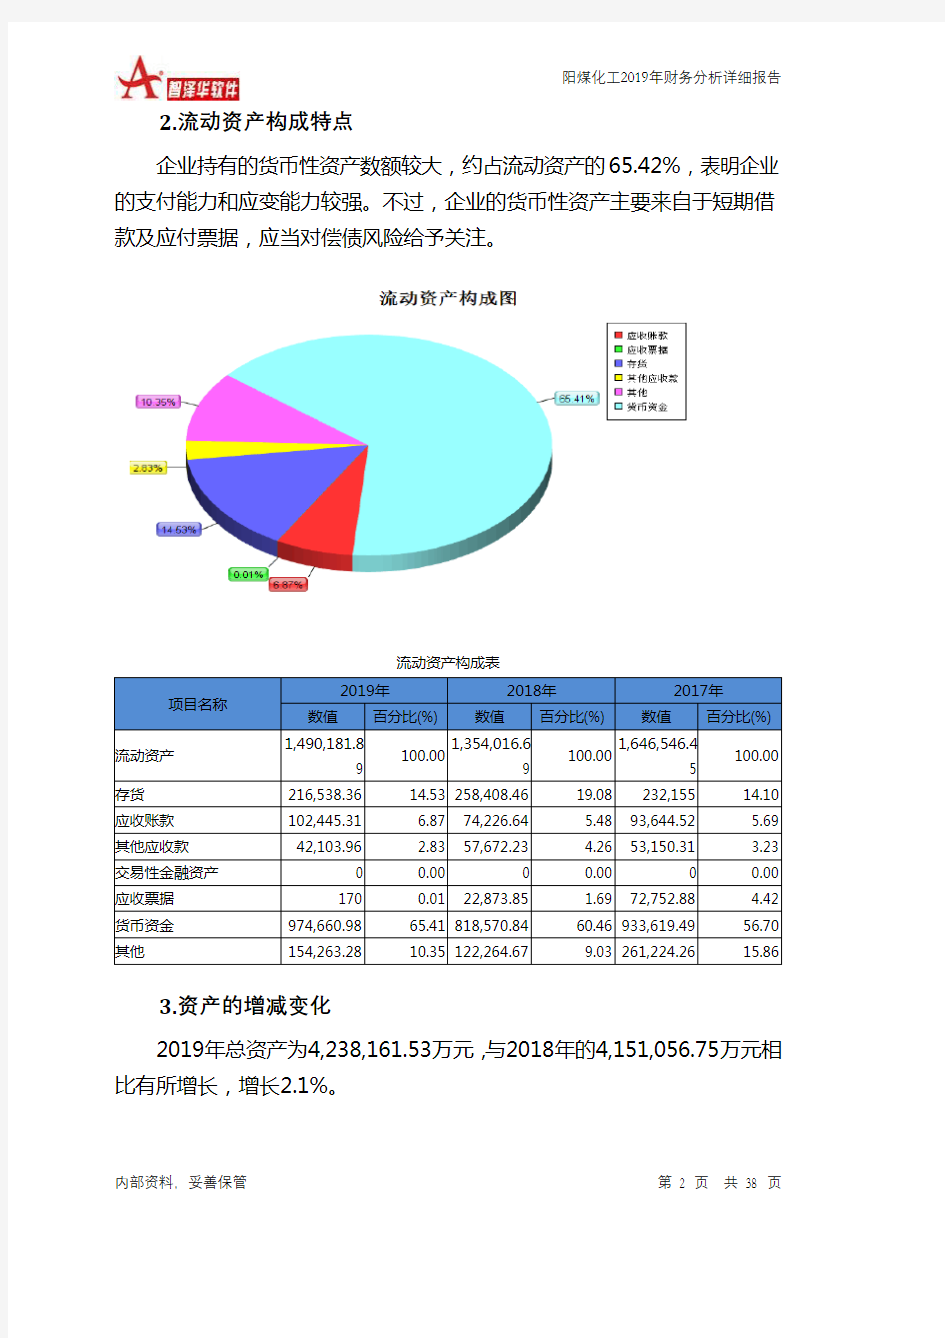 阳煤化工2019年财务分析详细报告